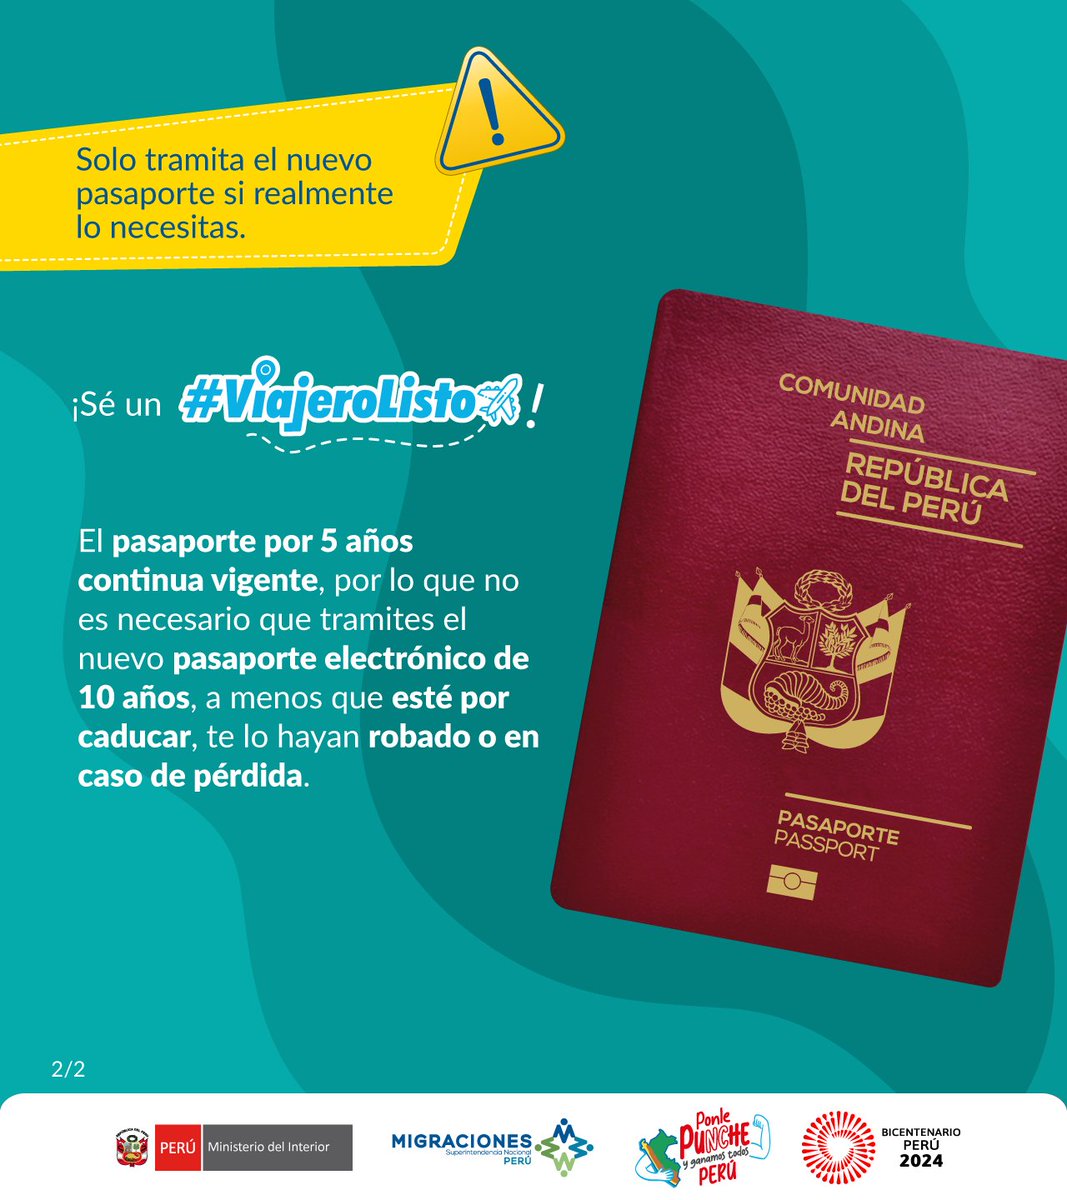 ¡Sé un #ViajeroListo! Desde el 7 de mayo iniciaremos la emisión del pasaporte para mayores de edad con una vigencia de 10 años. En caso tu cita sea a partir de esa fecha, deberás abonar un adicional de S/ 22.30, en el Banco de la Nación o en pagalo.pe.